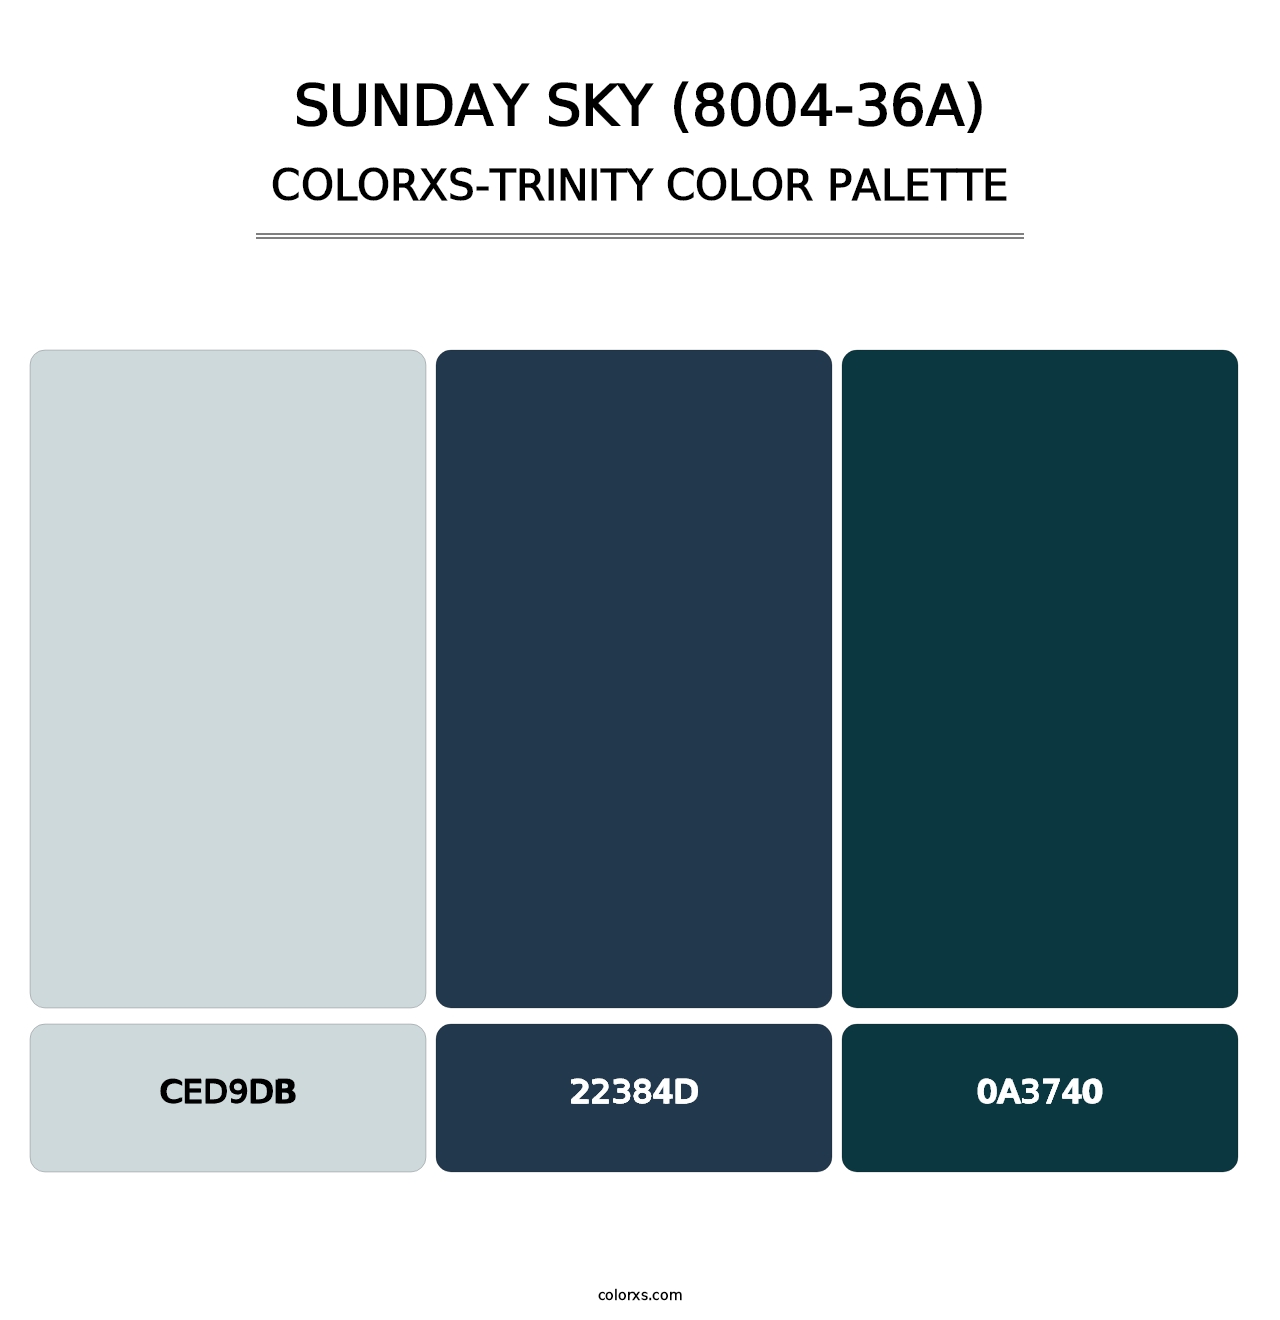 Sunday Sky (8004-36A) - Colorxs Trinity Palette